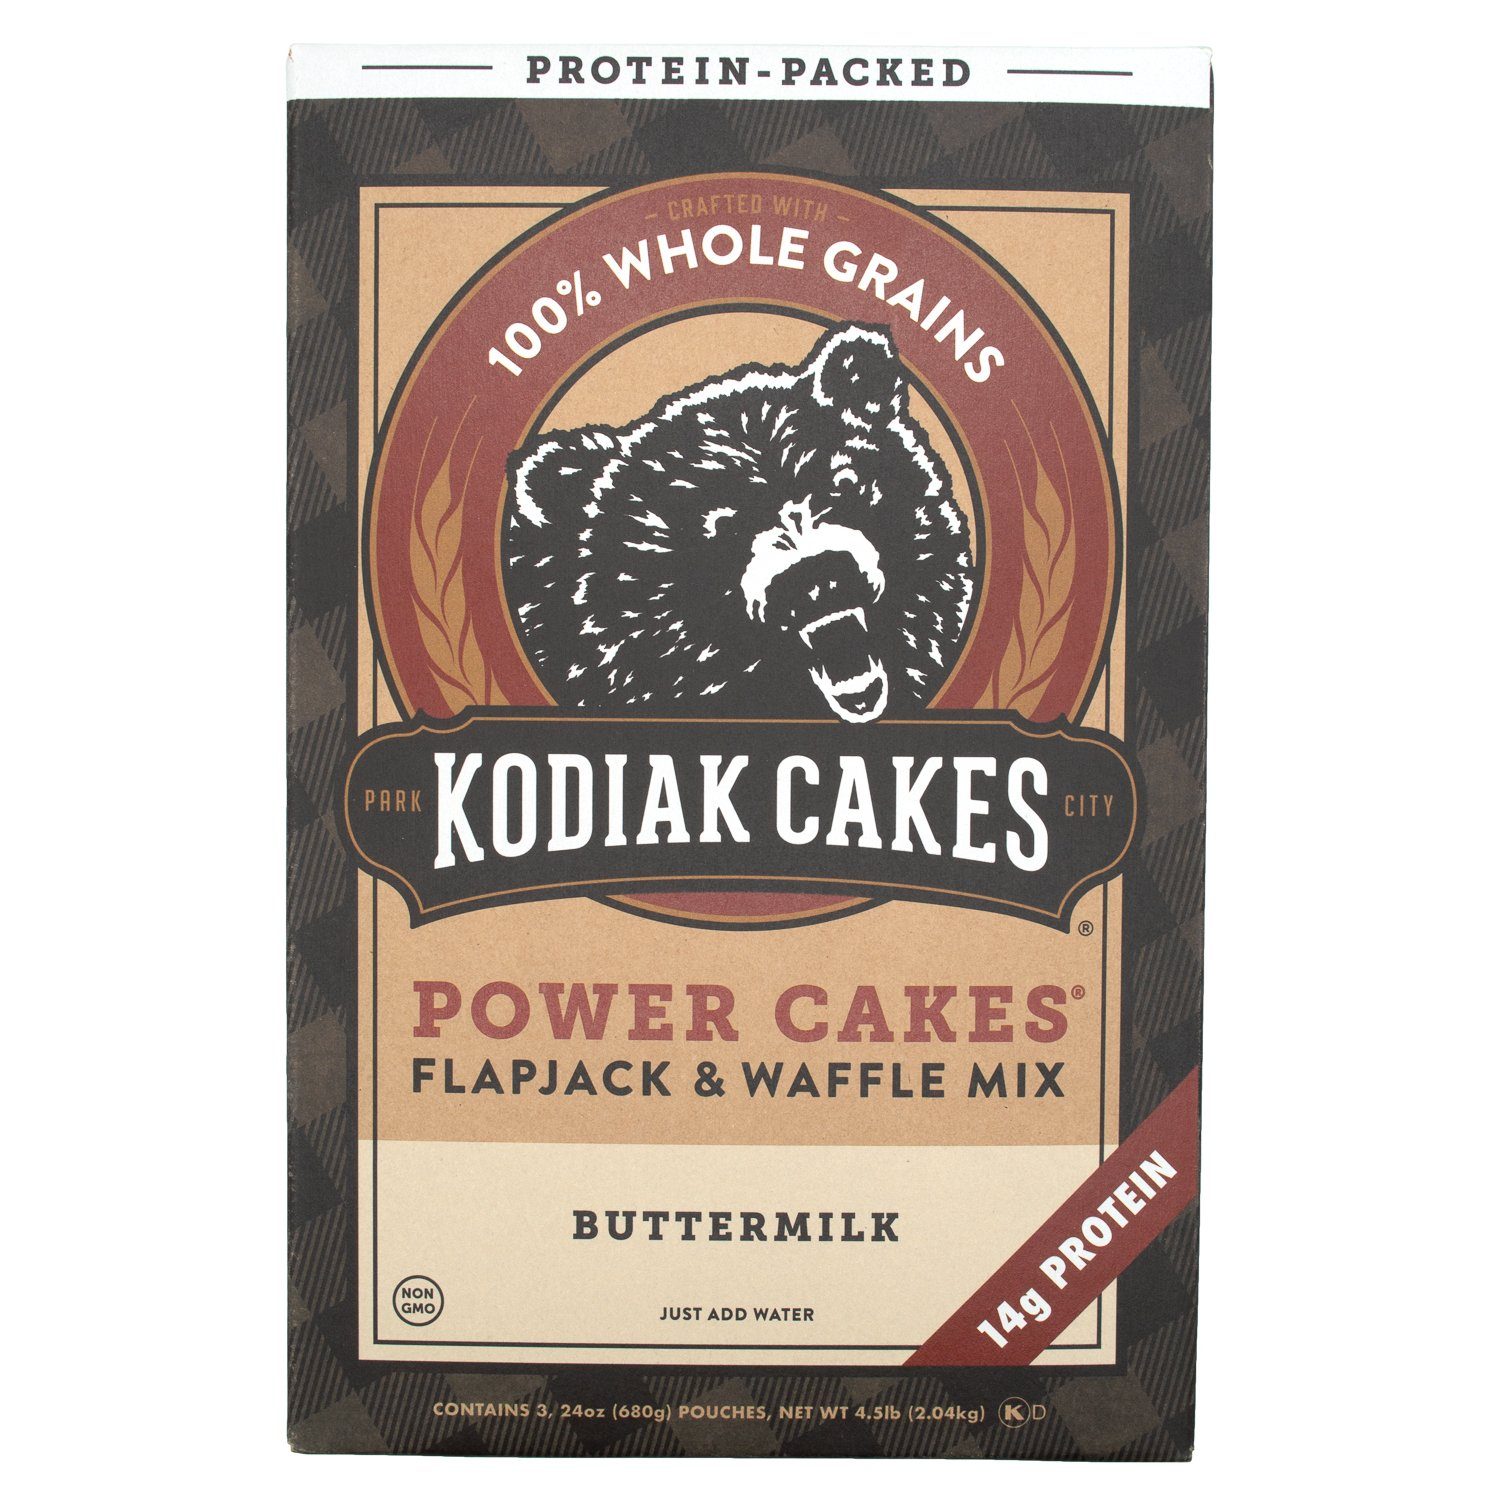 Kodiak Cakes Power Cakes Flapjack & Waffle Mix Kodiak Cakes Buttermilk 4.5 Pound 